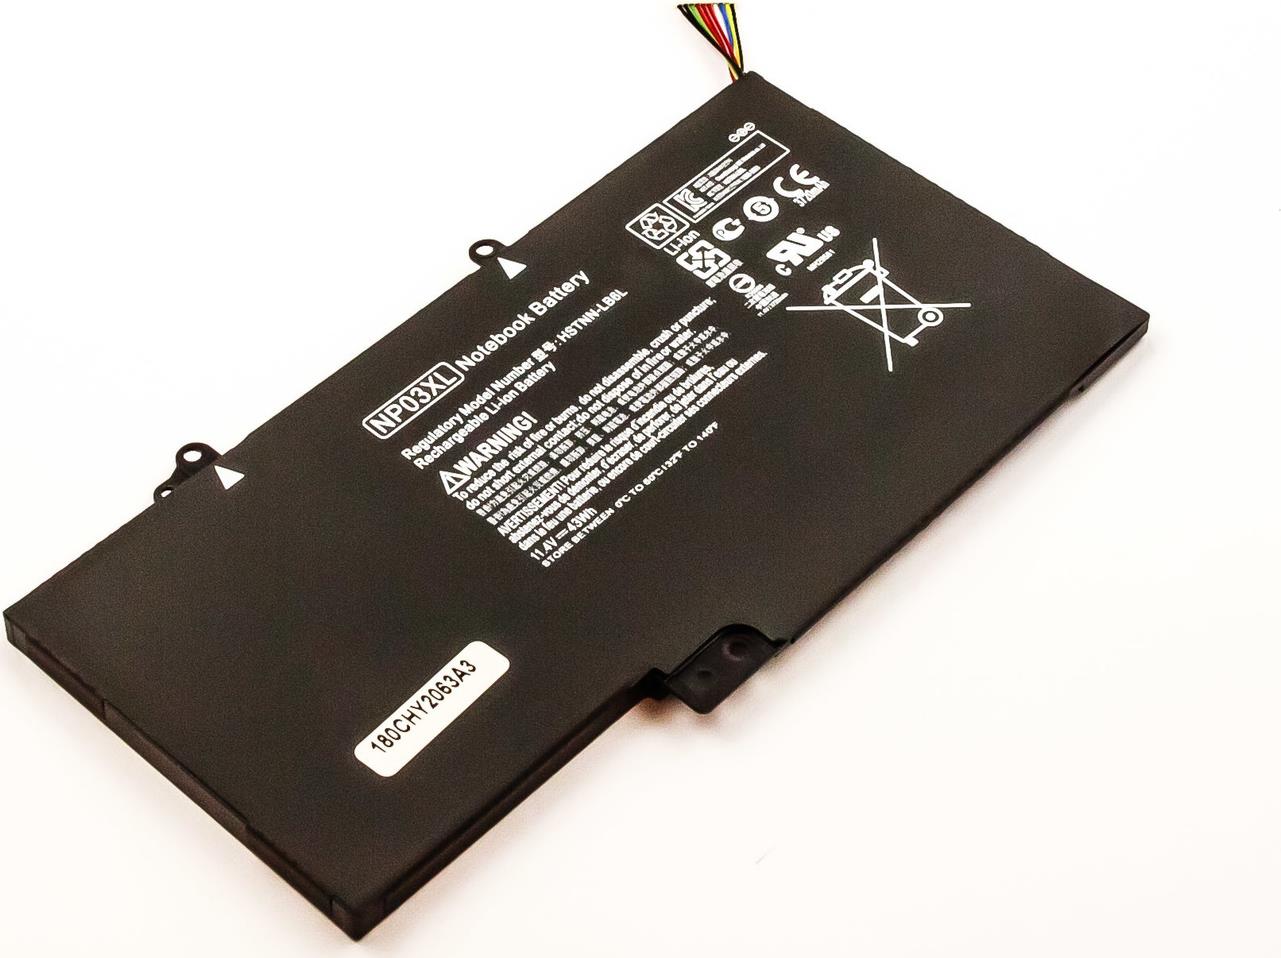 Image of CoreParts - Laptop-Batterie - Lithium-Polymer - 3.87 Ah - 43 Wh - für HP ENVY x360 Laptop, Pavilion Laptop 13, Pavilion x360 Laptop